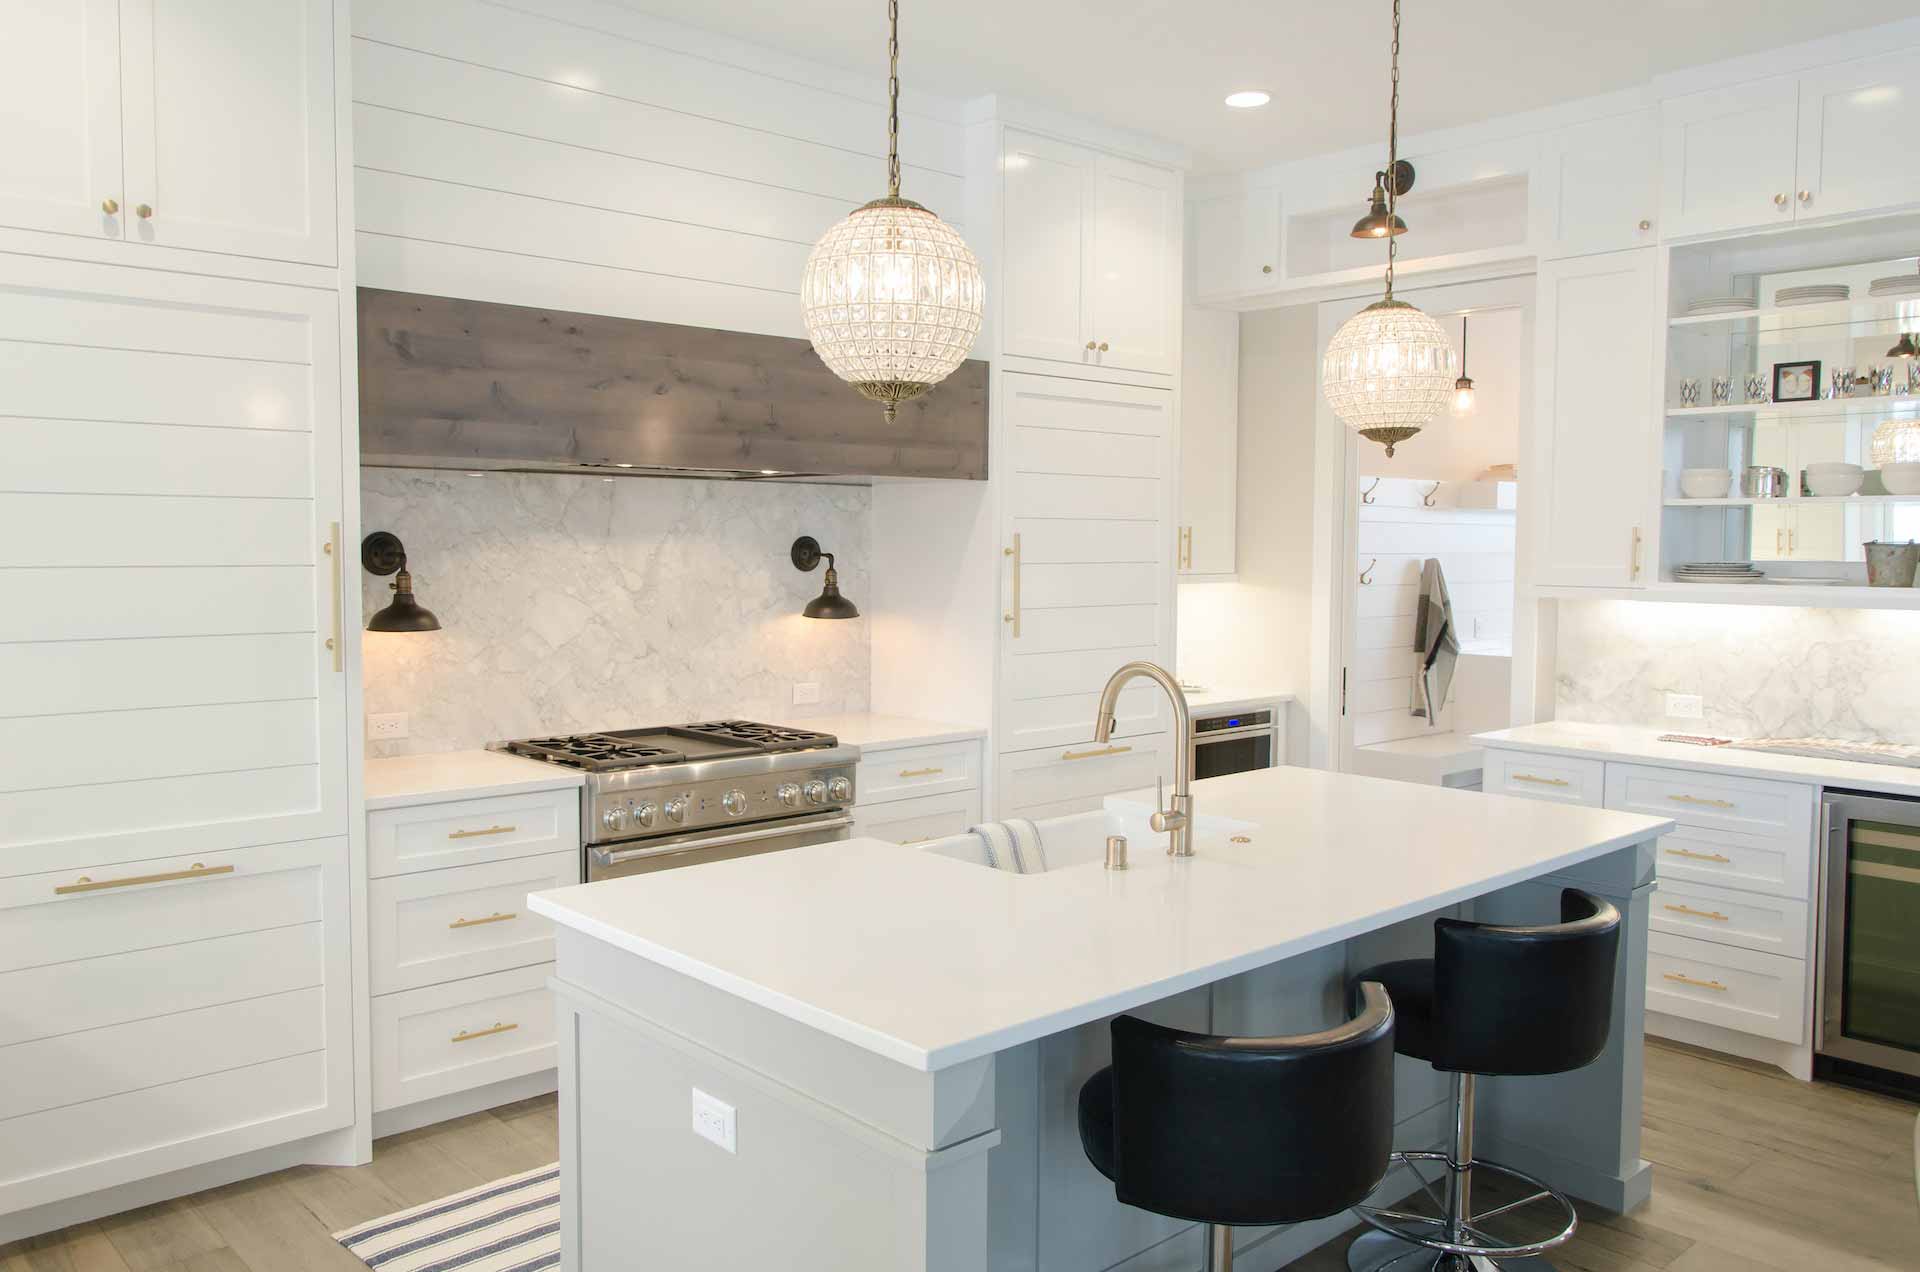 Kitchen with brand new white quartz countertops